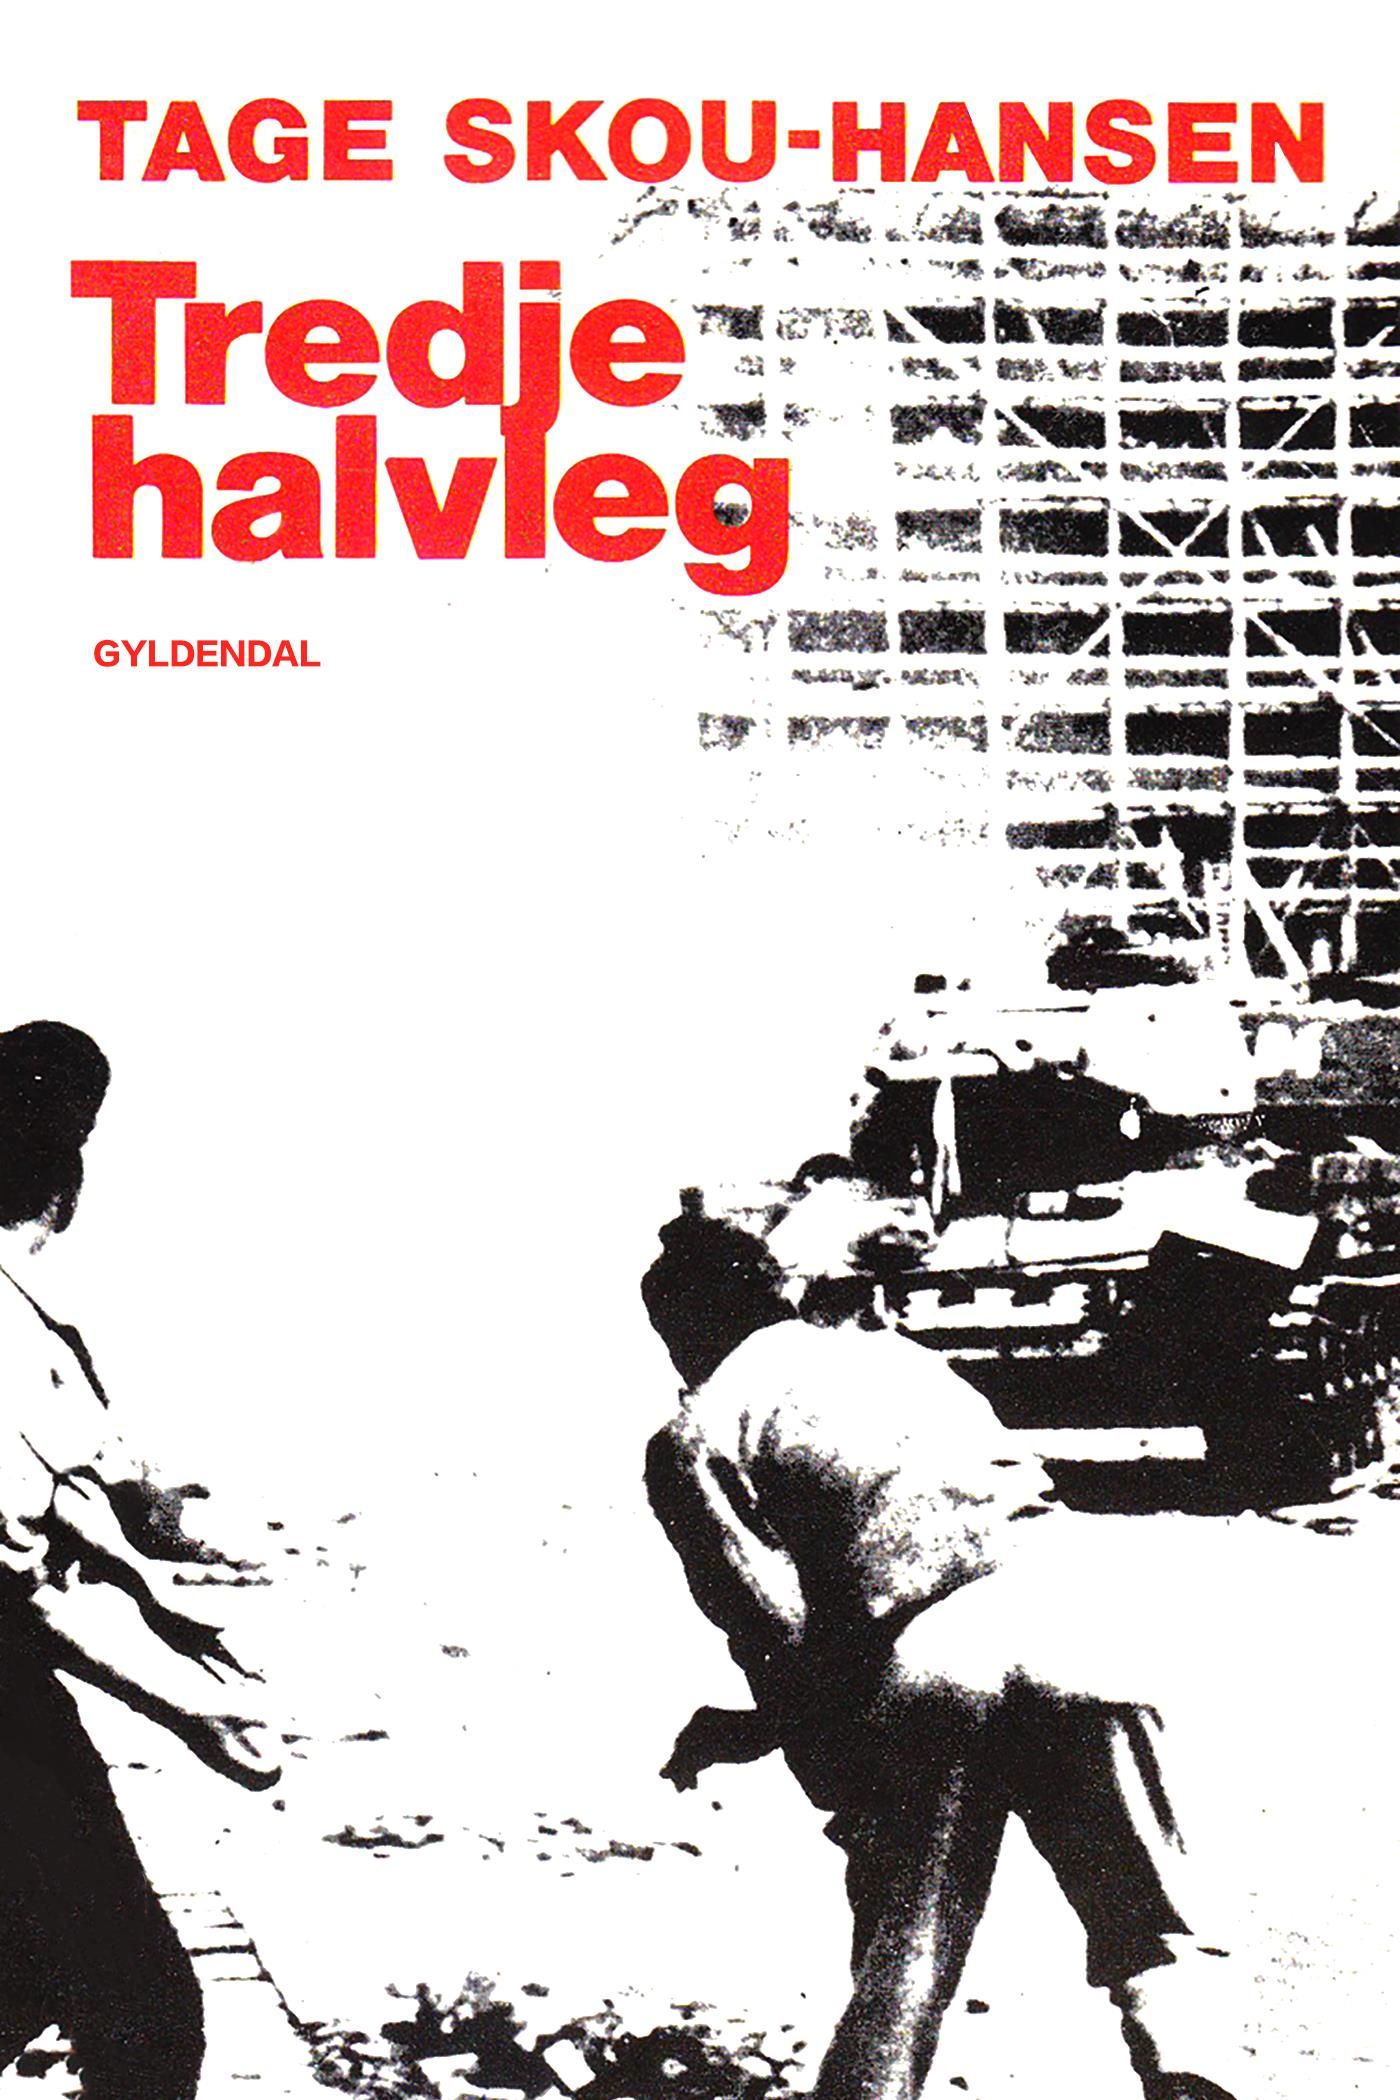 Tredje halvleg, e-bog af Tage Skou-Hansen